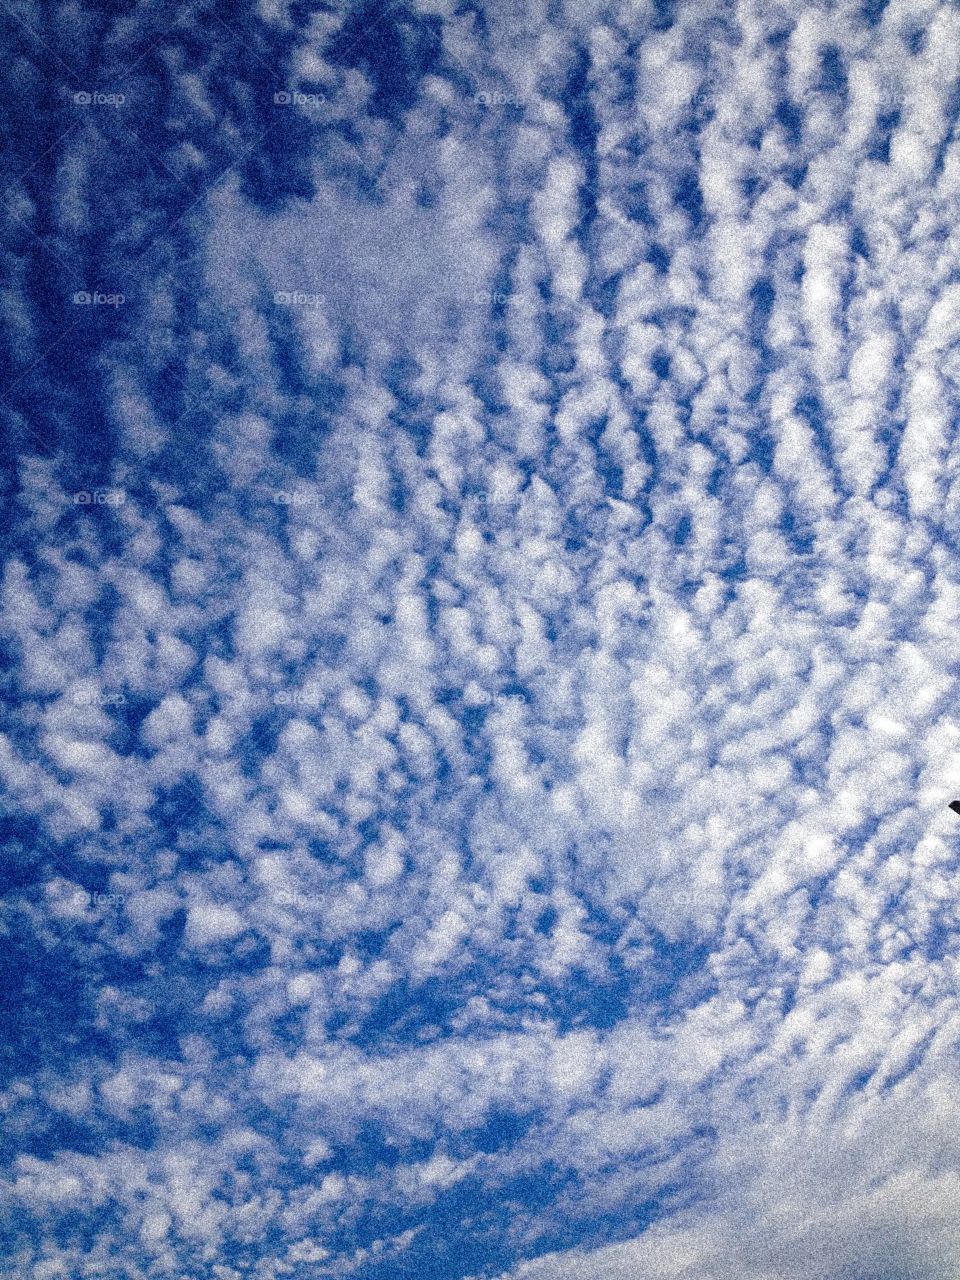  Versão granulada de uma foto de um céu azul coberto por fragmentos de uma nuvem limpa 